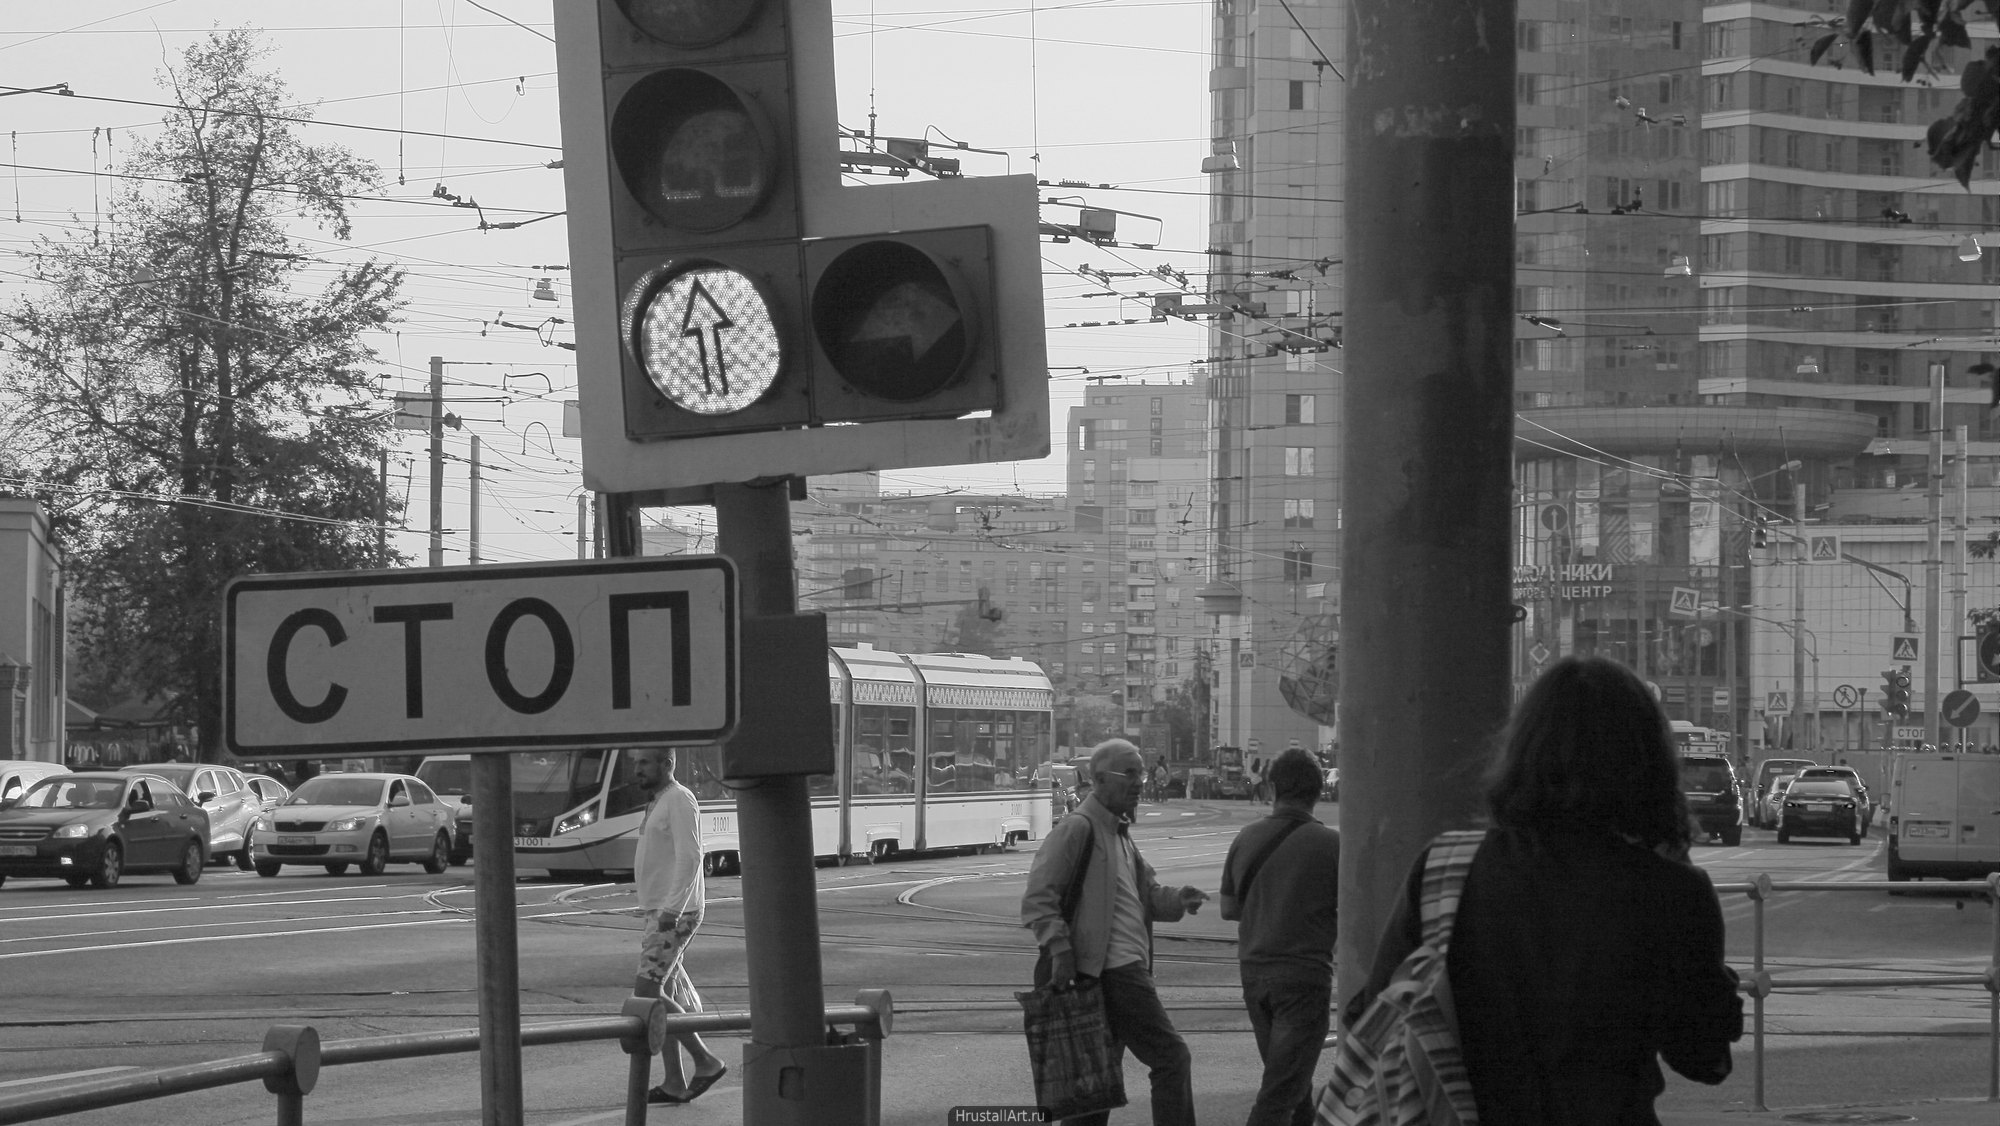 Московский перекресток. Перекрёсток, светофор, высотка, городской хаос, прохожие и машины, серый цвет, пыльный воздух.